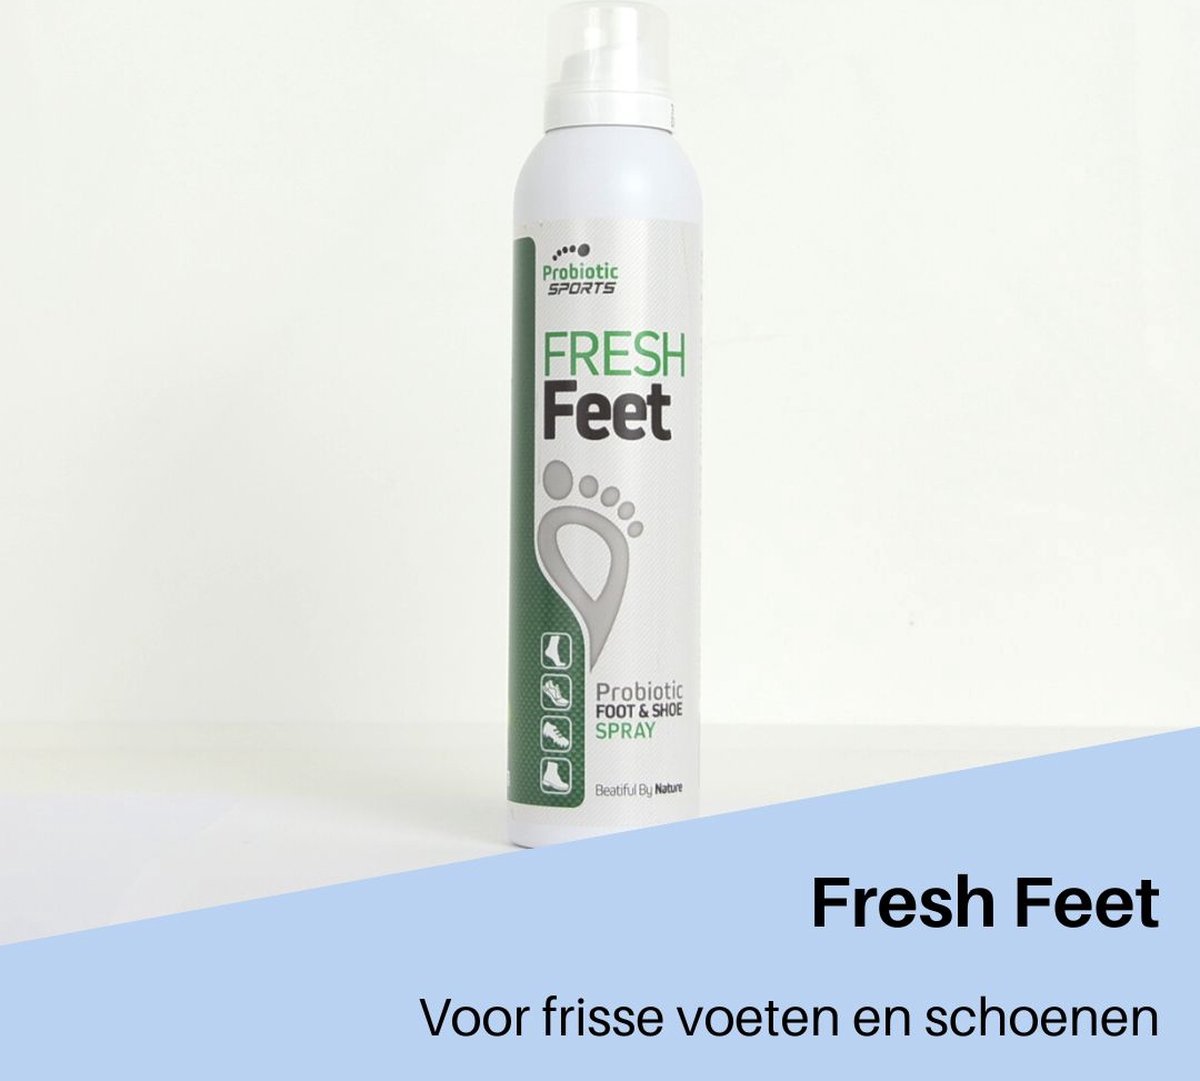 Probiotic Plus - Fresh Feet - Voetspray tegen zweetvoeten in sneakers, werkschoenen, sportschoenen en op de huid - Probiotica spray - Voetenspray tegen zweetgeur